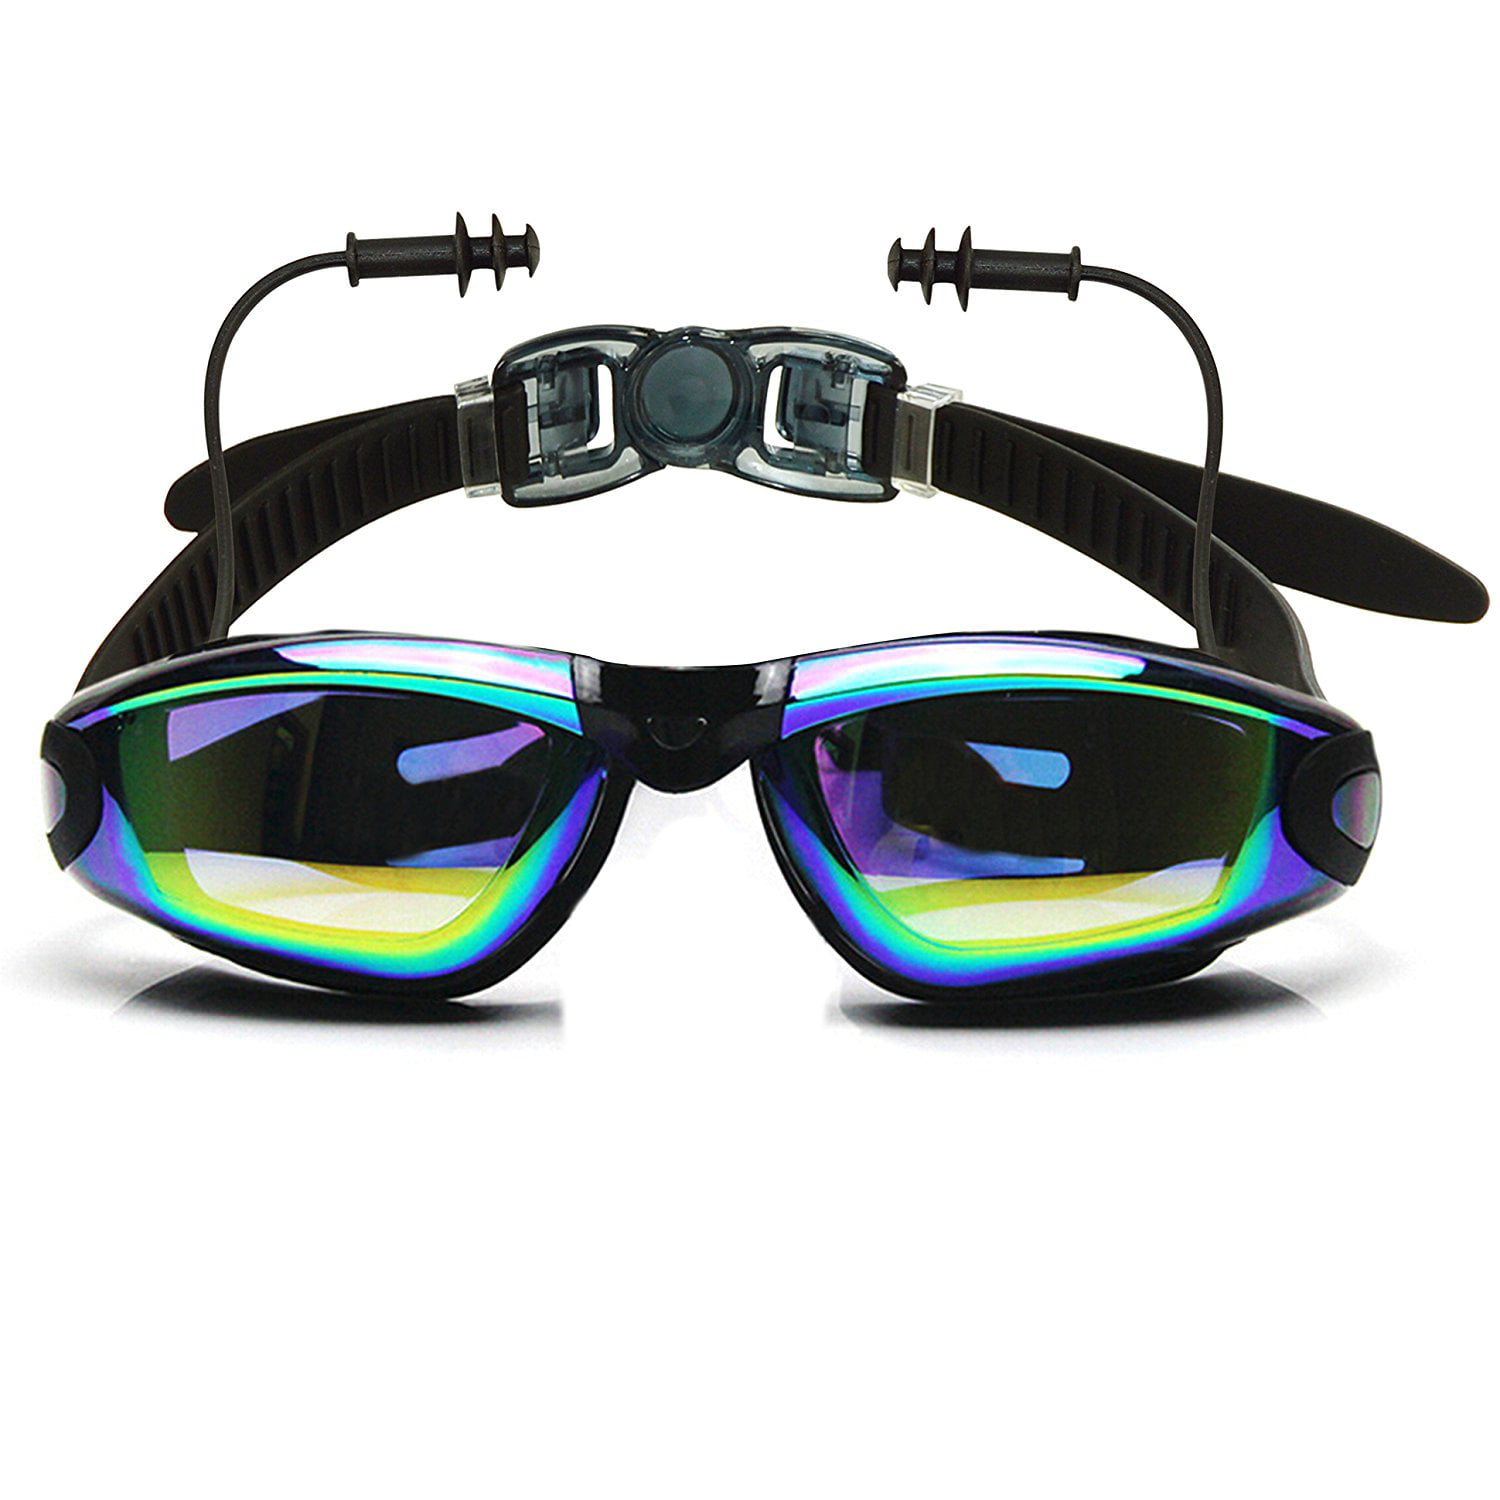 Adult Swim Goggles Anti Fog Silicone Adjustable Strap Mirror Lens Case Ear Plug 